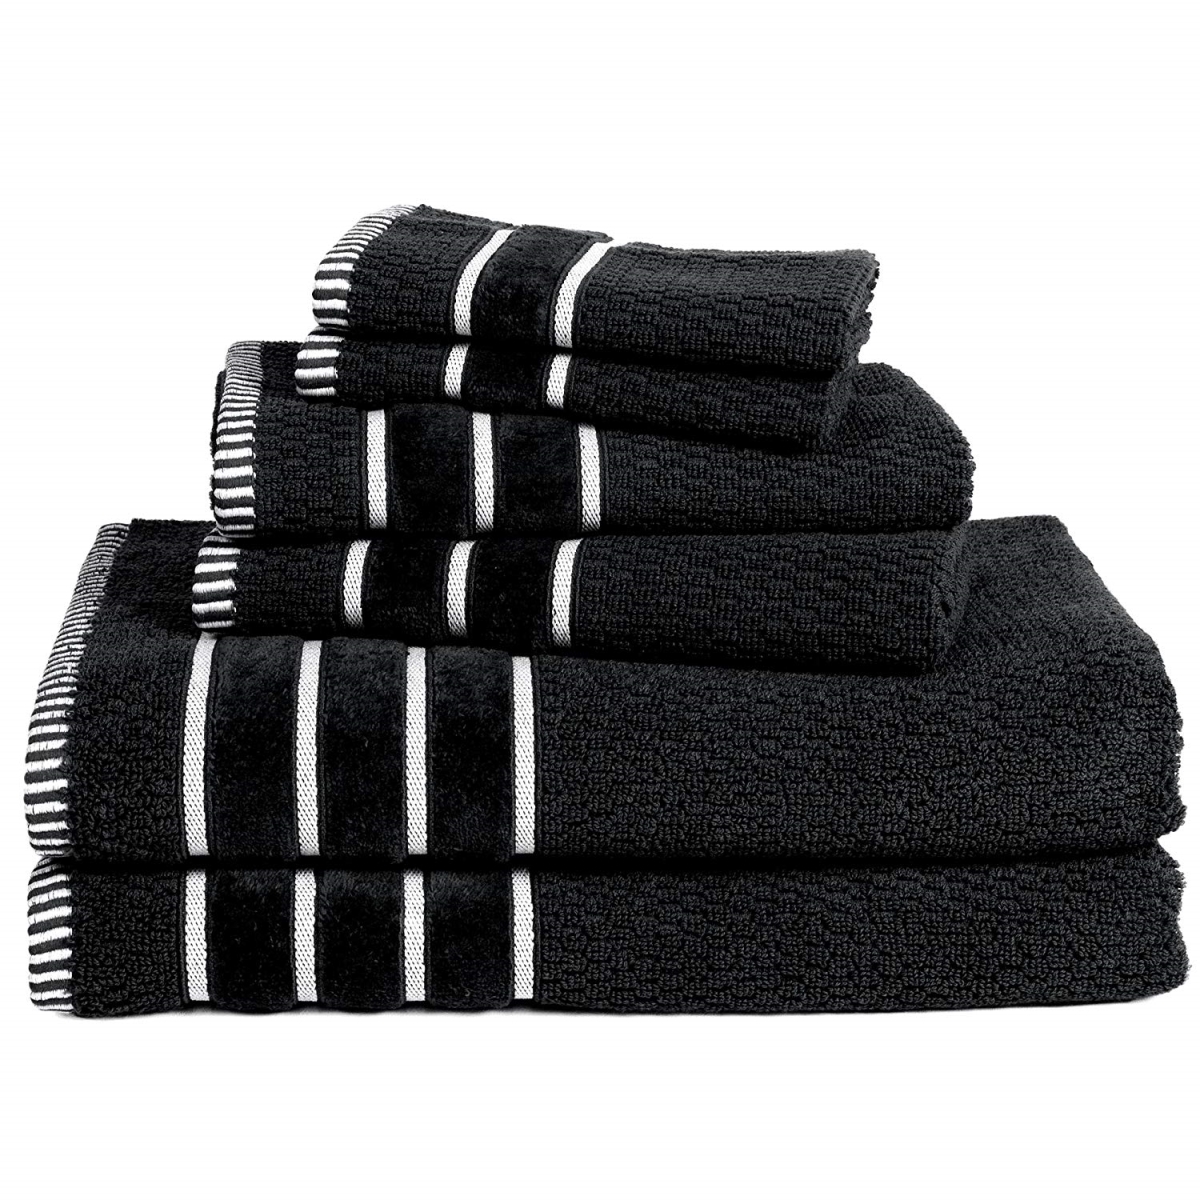 67a-27520 100 Percent Cotton Rice Weave 6 Piece Towel Set - Black